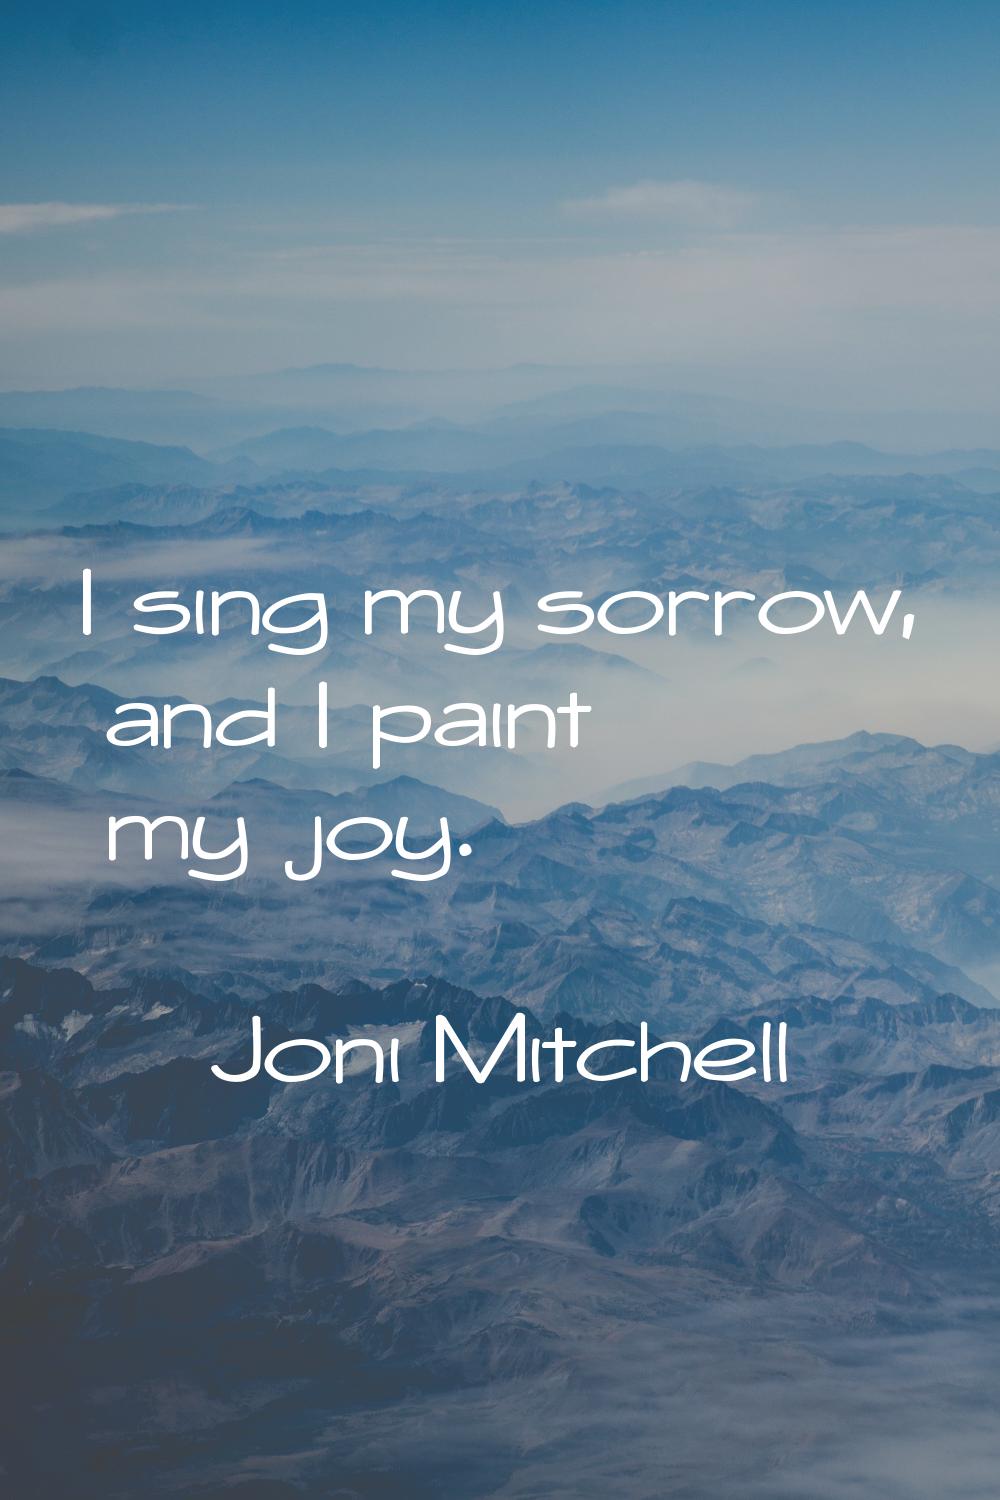 I sing my sorrow, and I paint my joy.